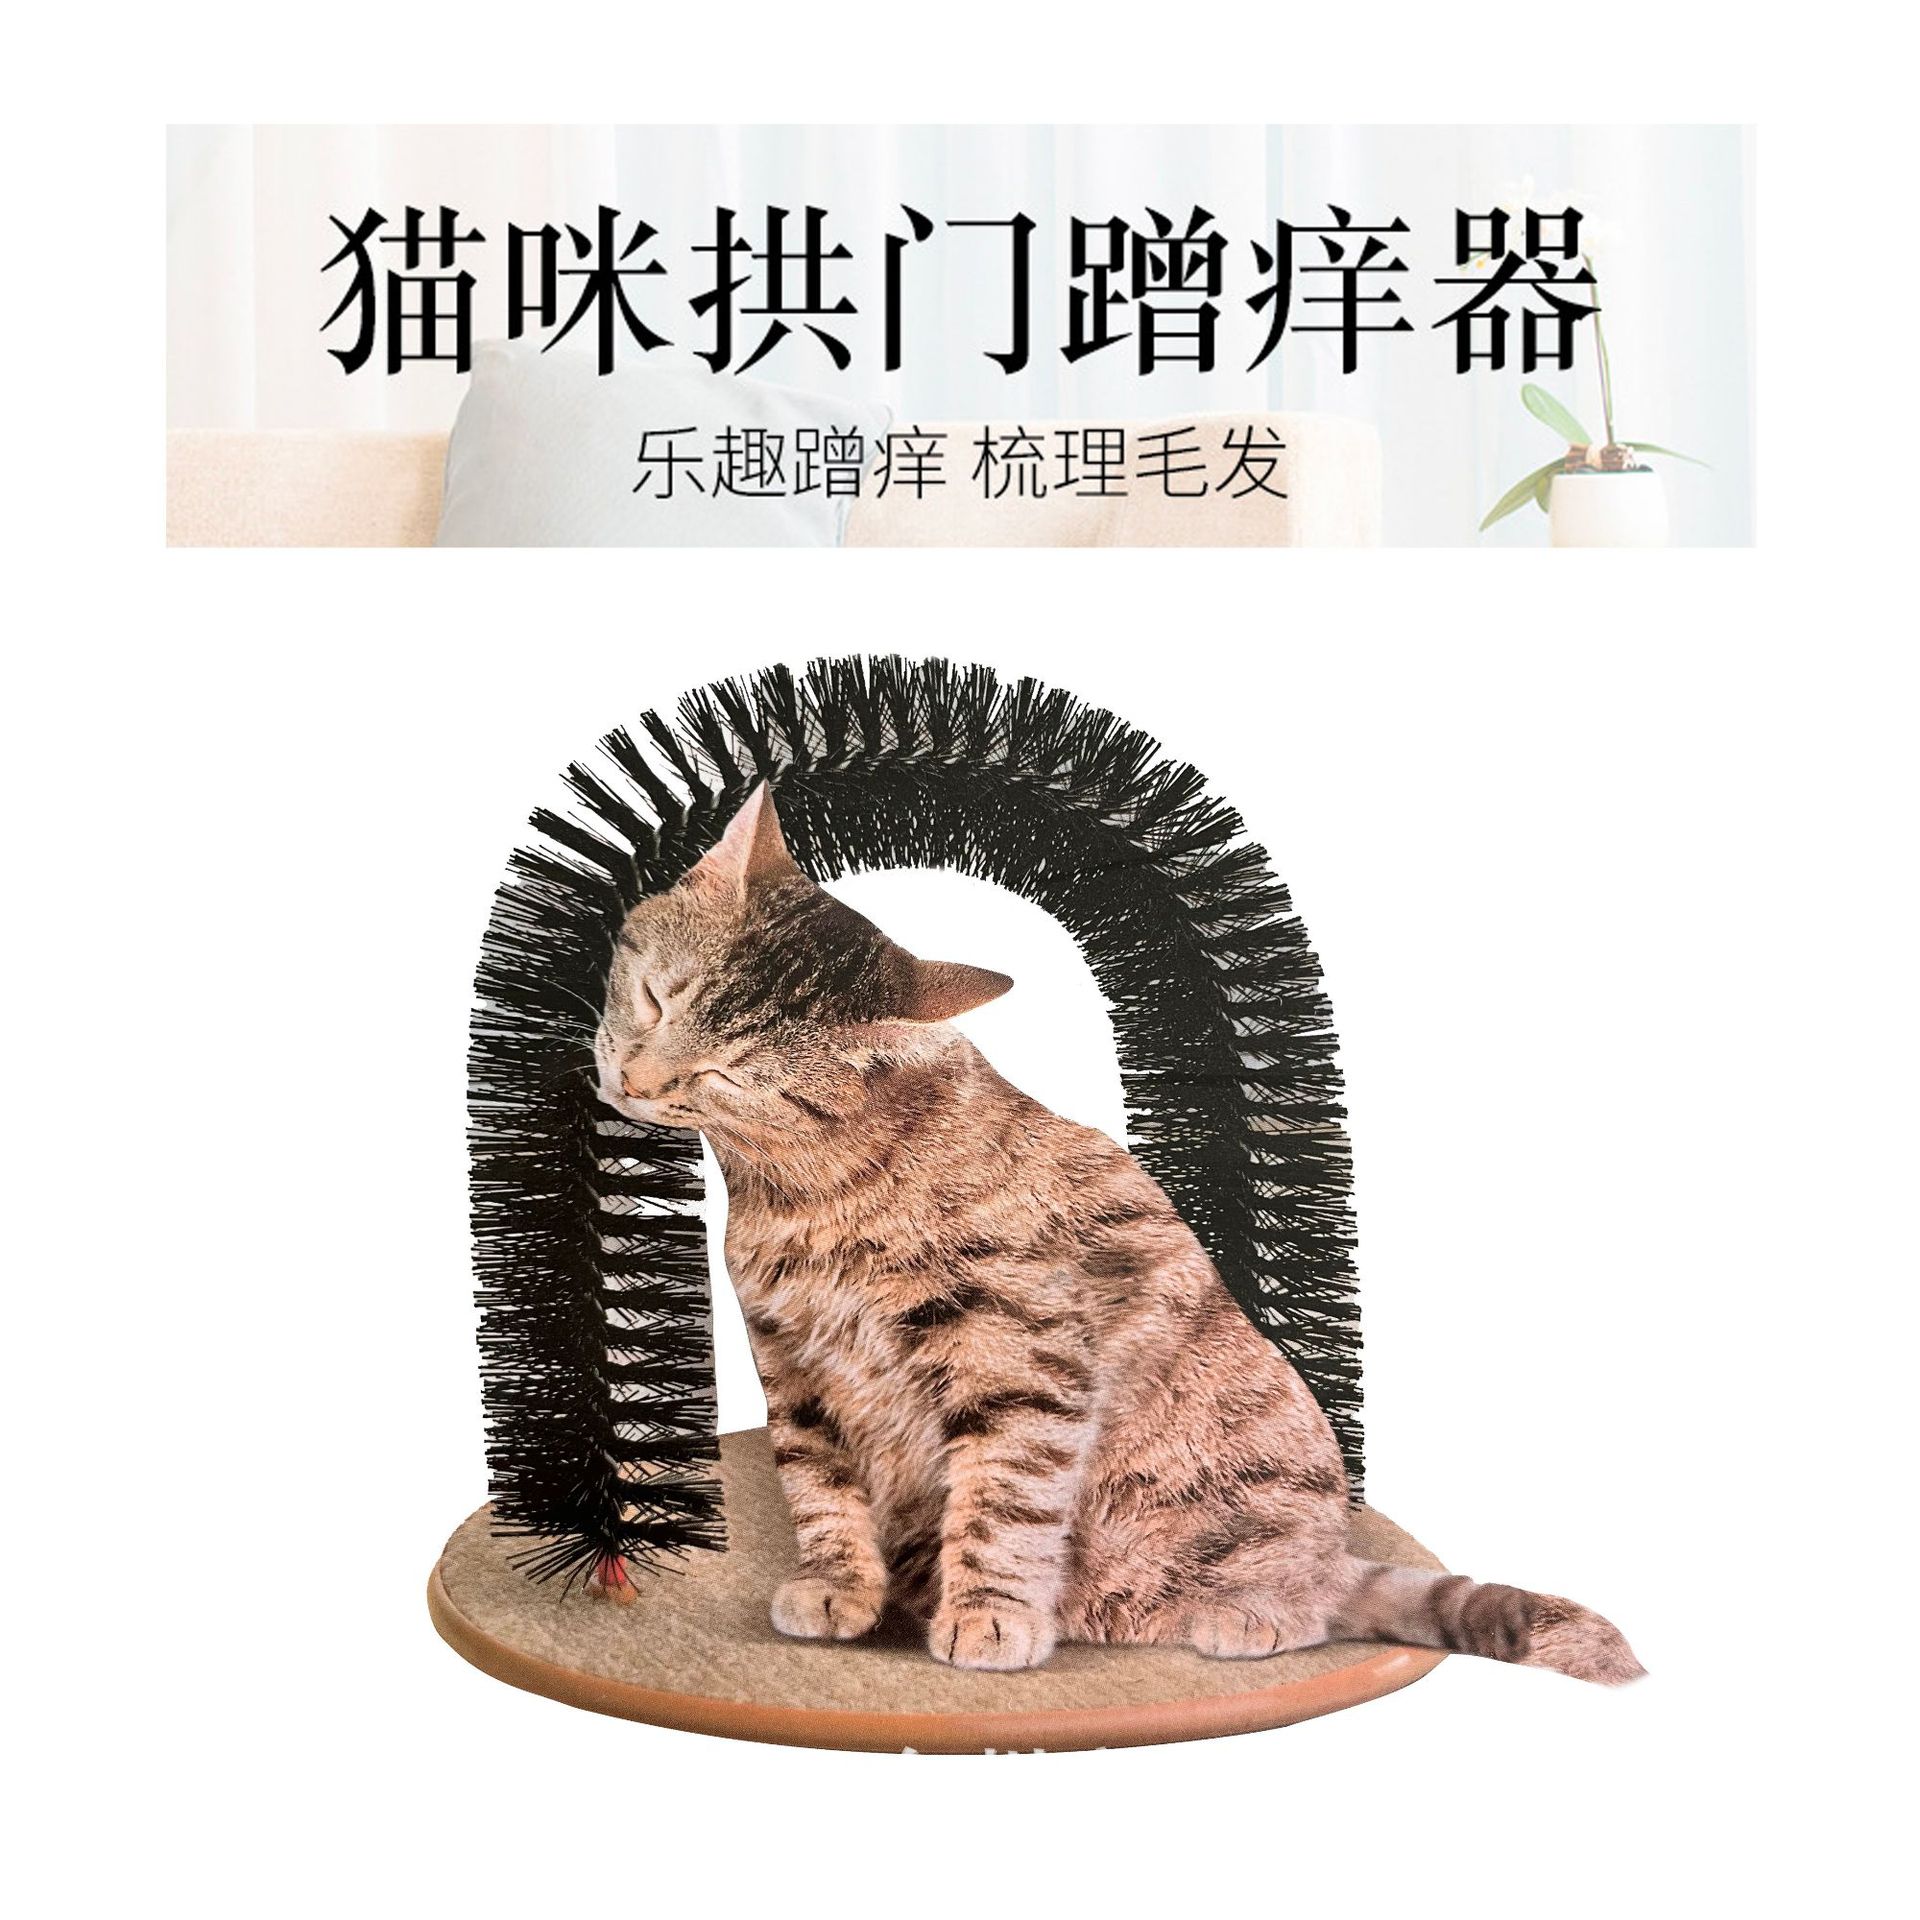 猫墙角蹭毛器猫咪挠痒痒玩具按摩刷蹭痒器宠物用品猫用蹭脸猫抓板